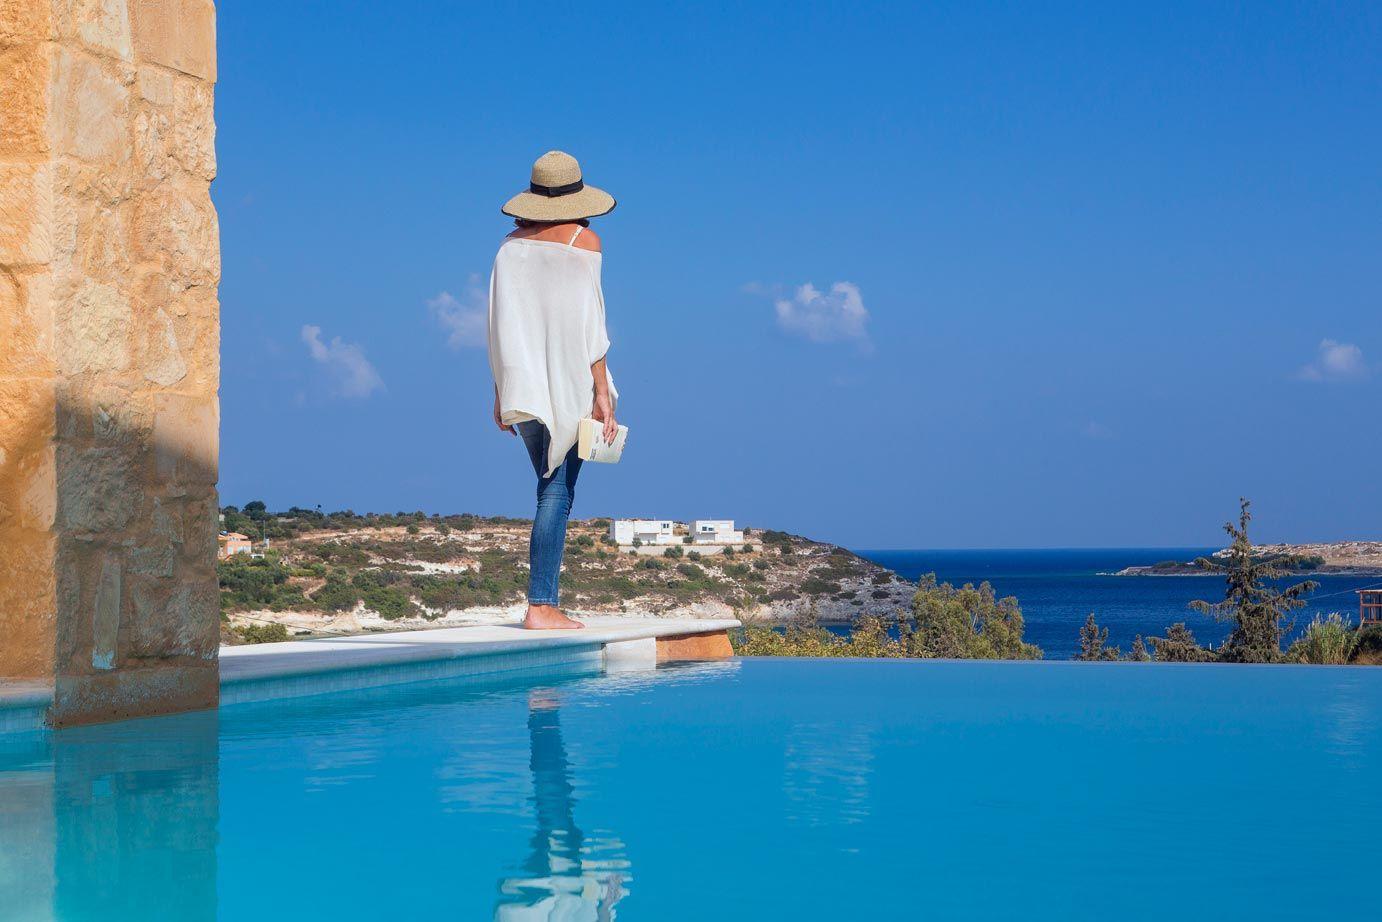 Ferienhaus mit Privatpool für 6 Personen ca.  Ferienhaus in Griechenland